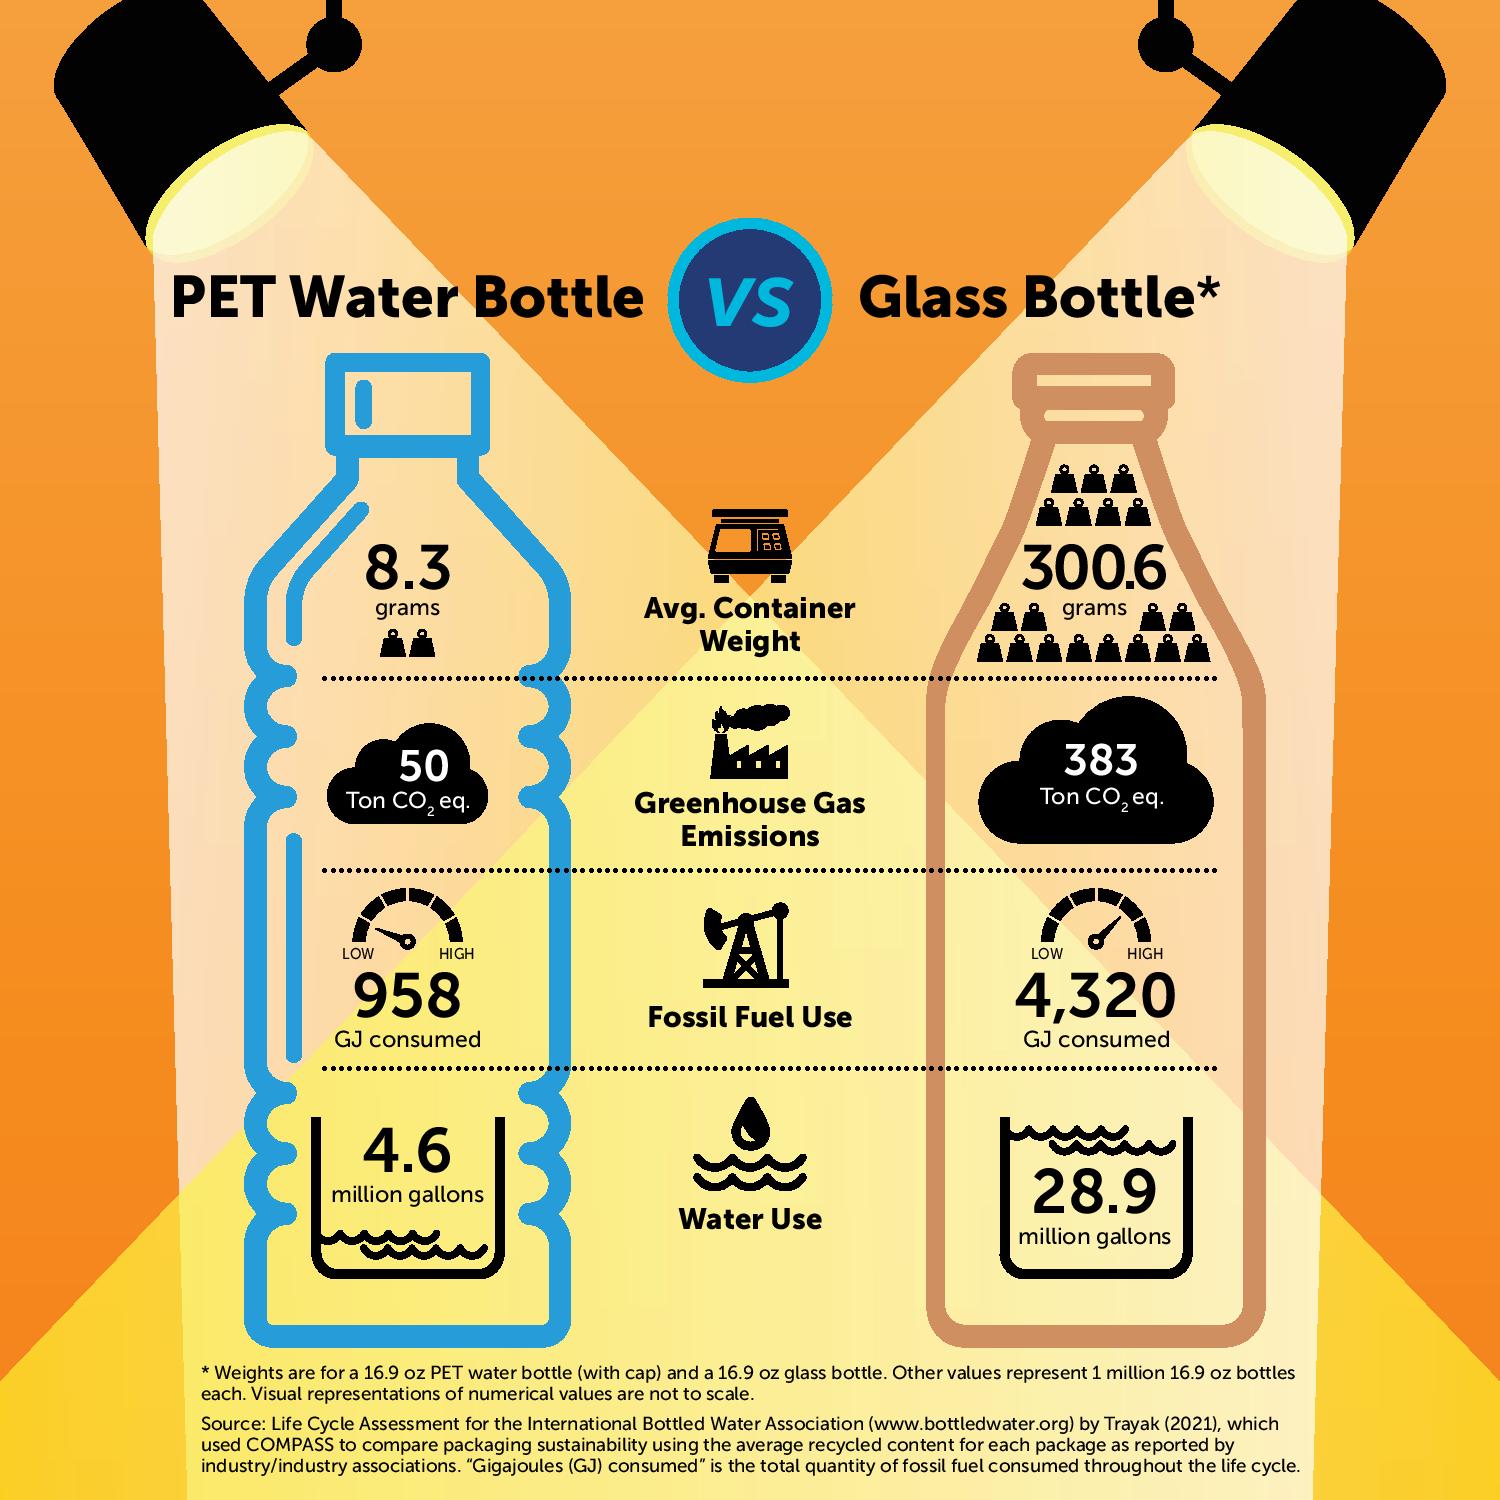 PET Water Bottle vs Glass Bottle